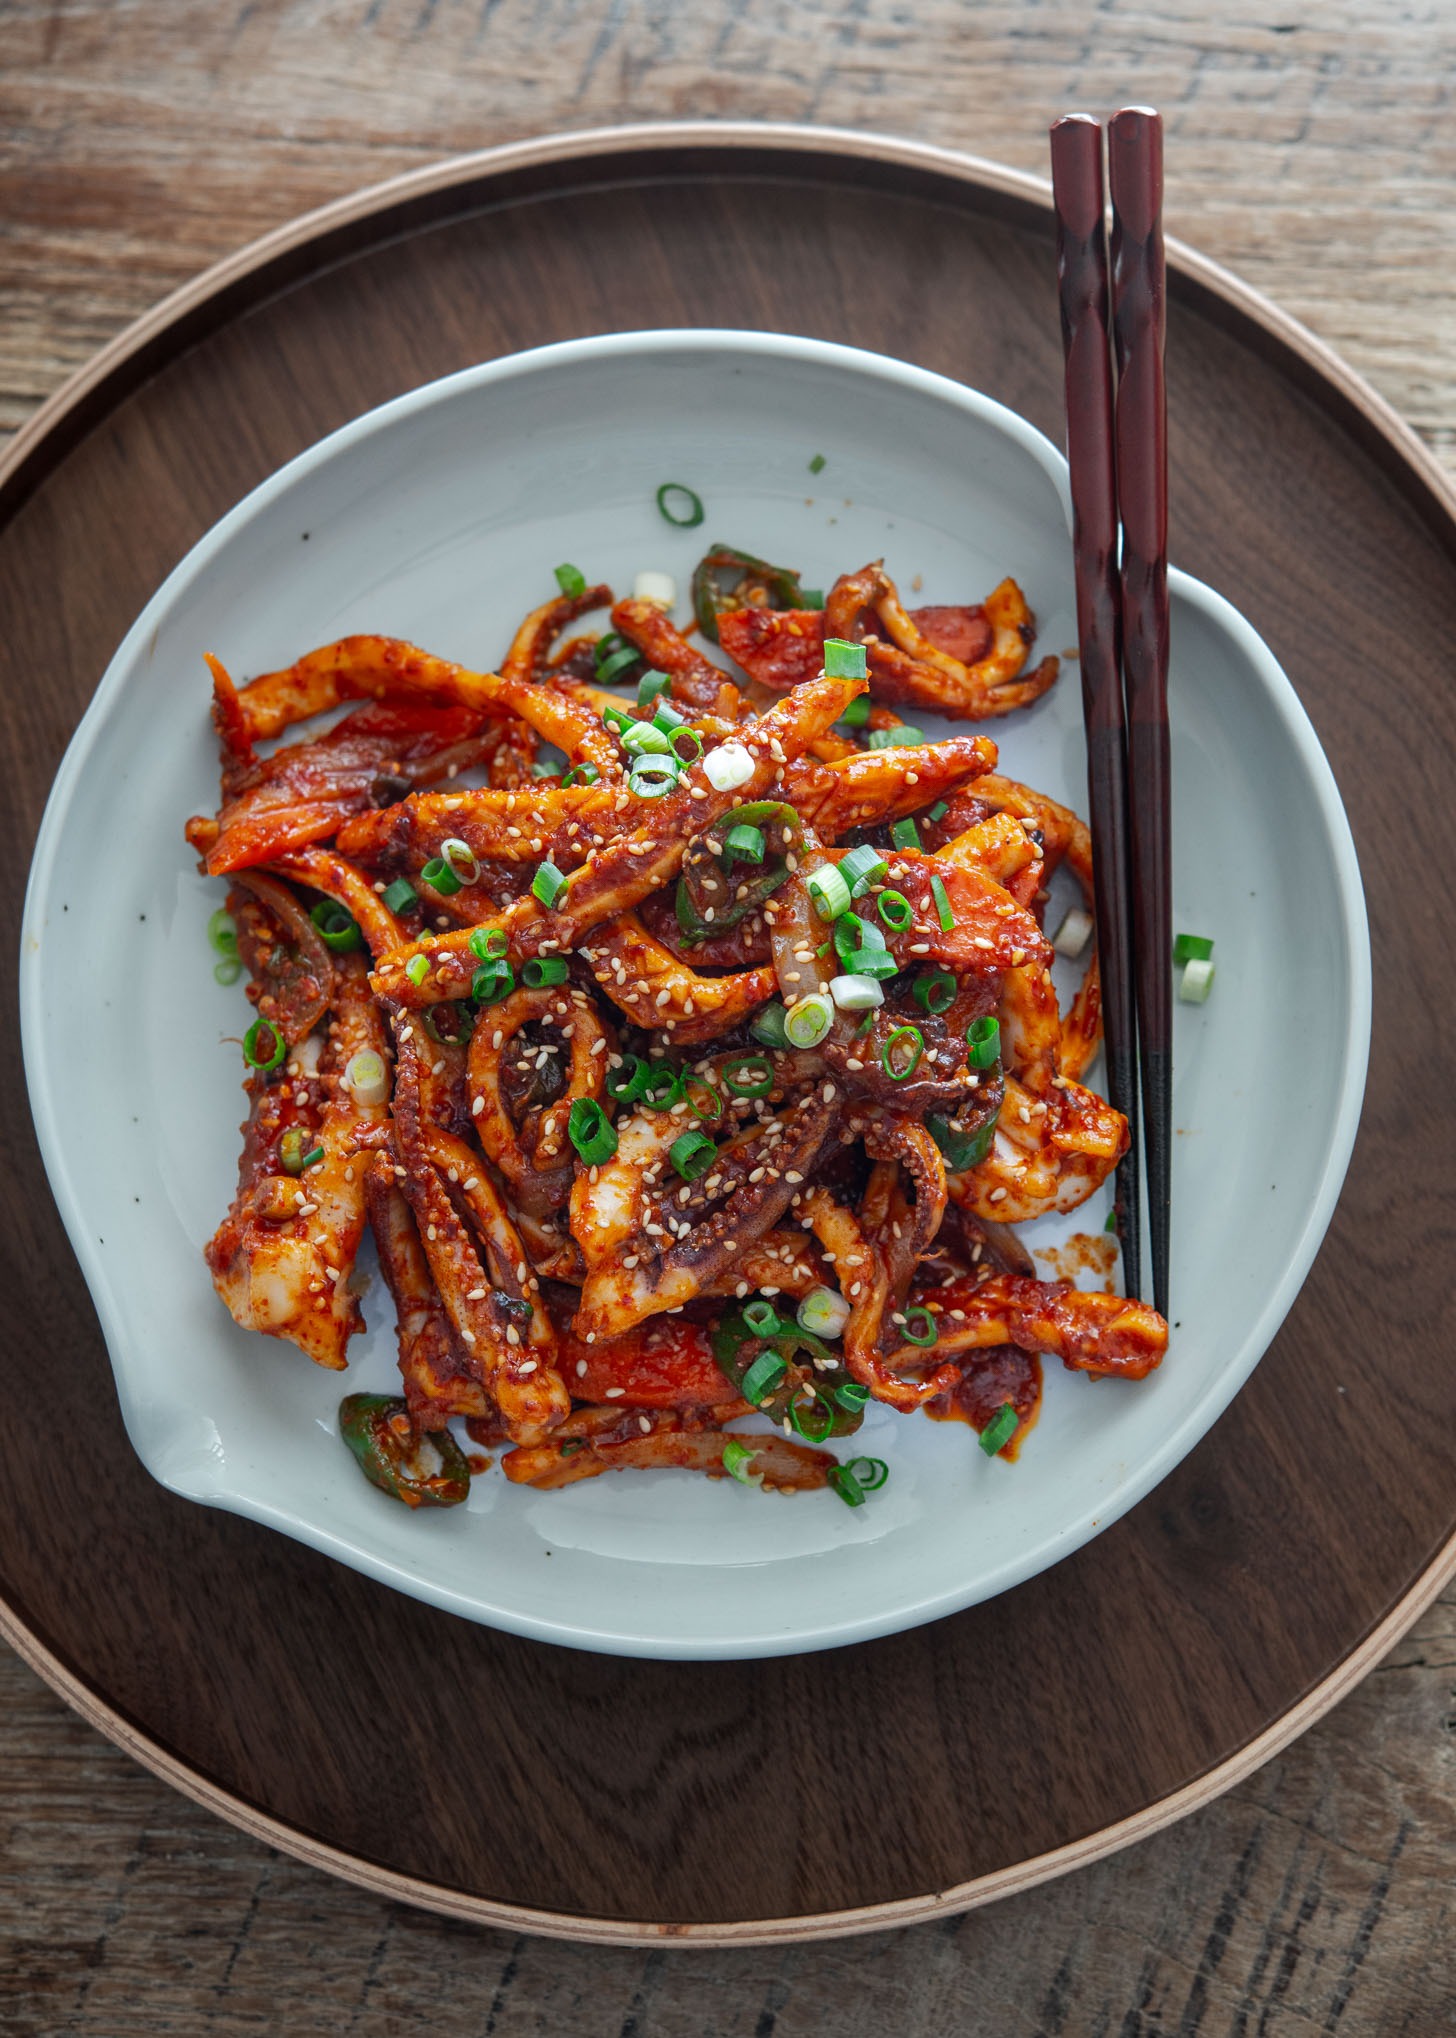  Korean spicy squid stir-fry (ojingeo bokkeum) in a serving dish.